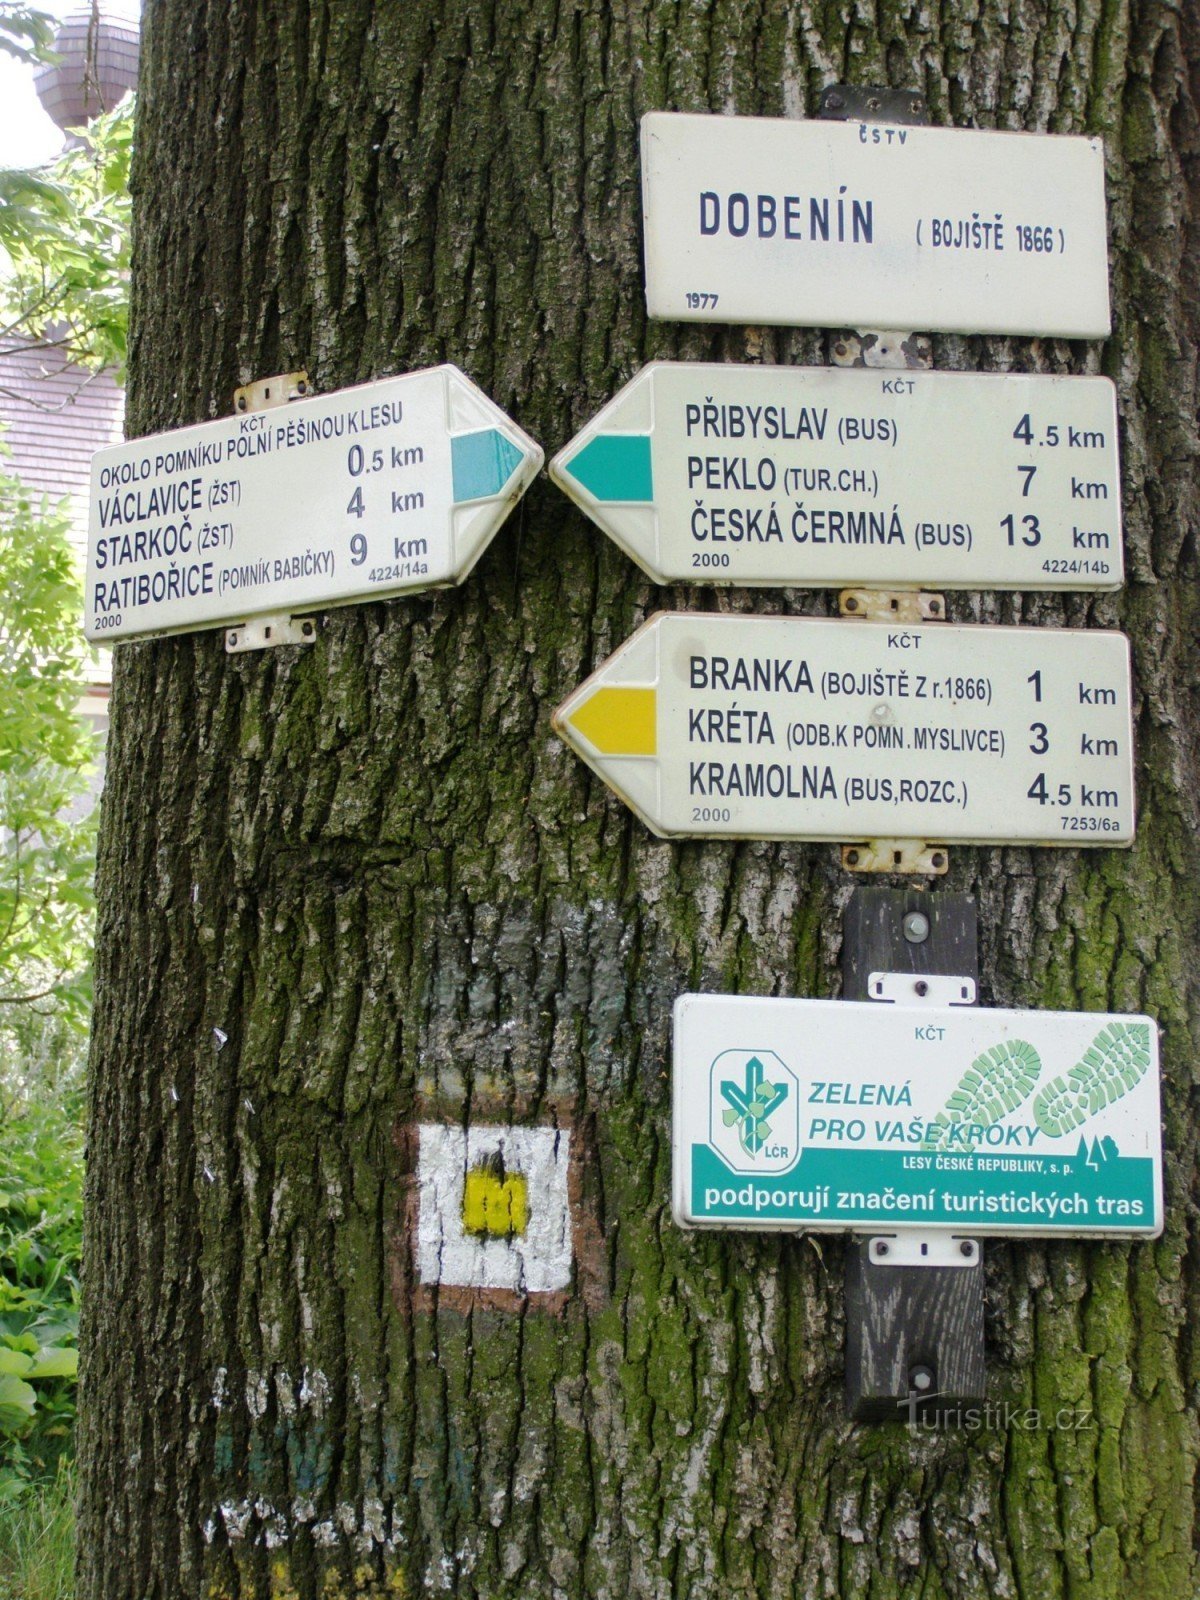 encruzilhada turística Dobenín (Václavice)